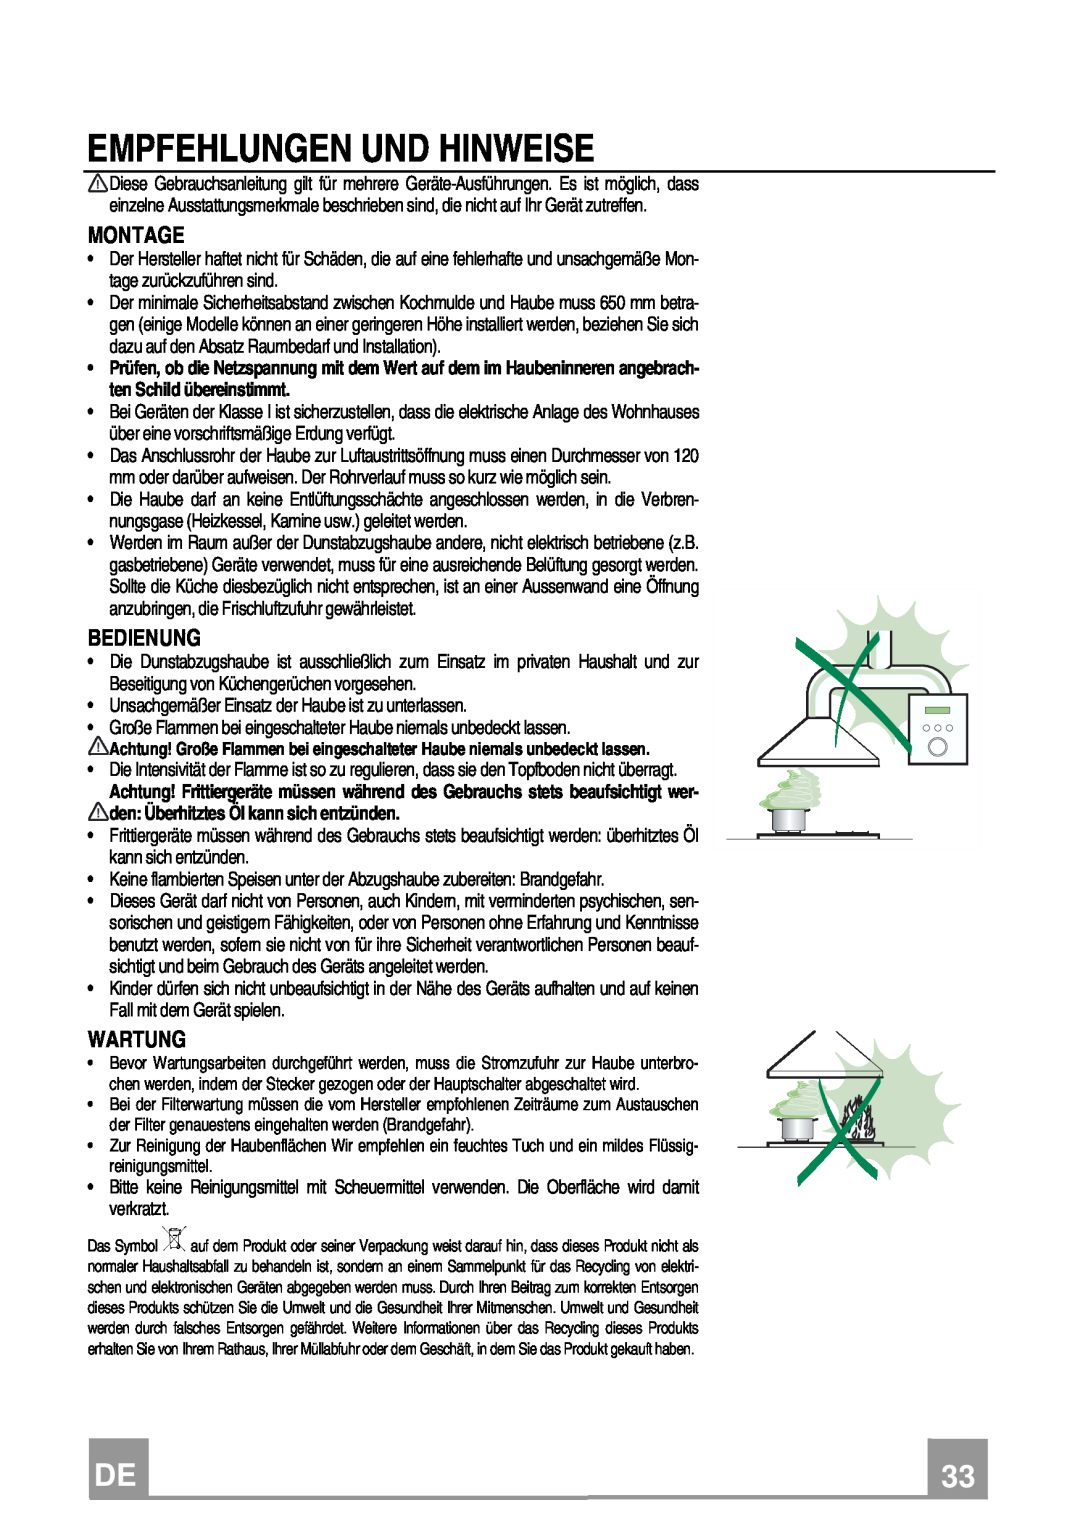 Franke Consumer Products FCR 708-H TC manual Empfehlungen Und Hinweise, Montage, Bedienung, Wartung 